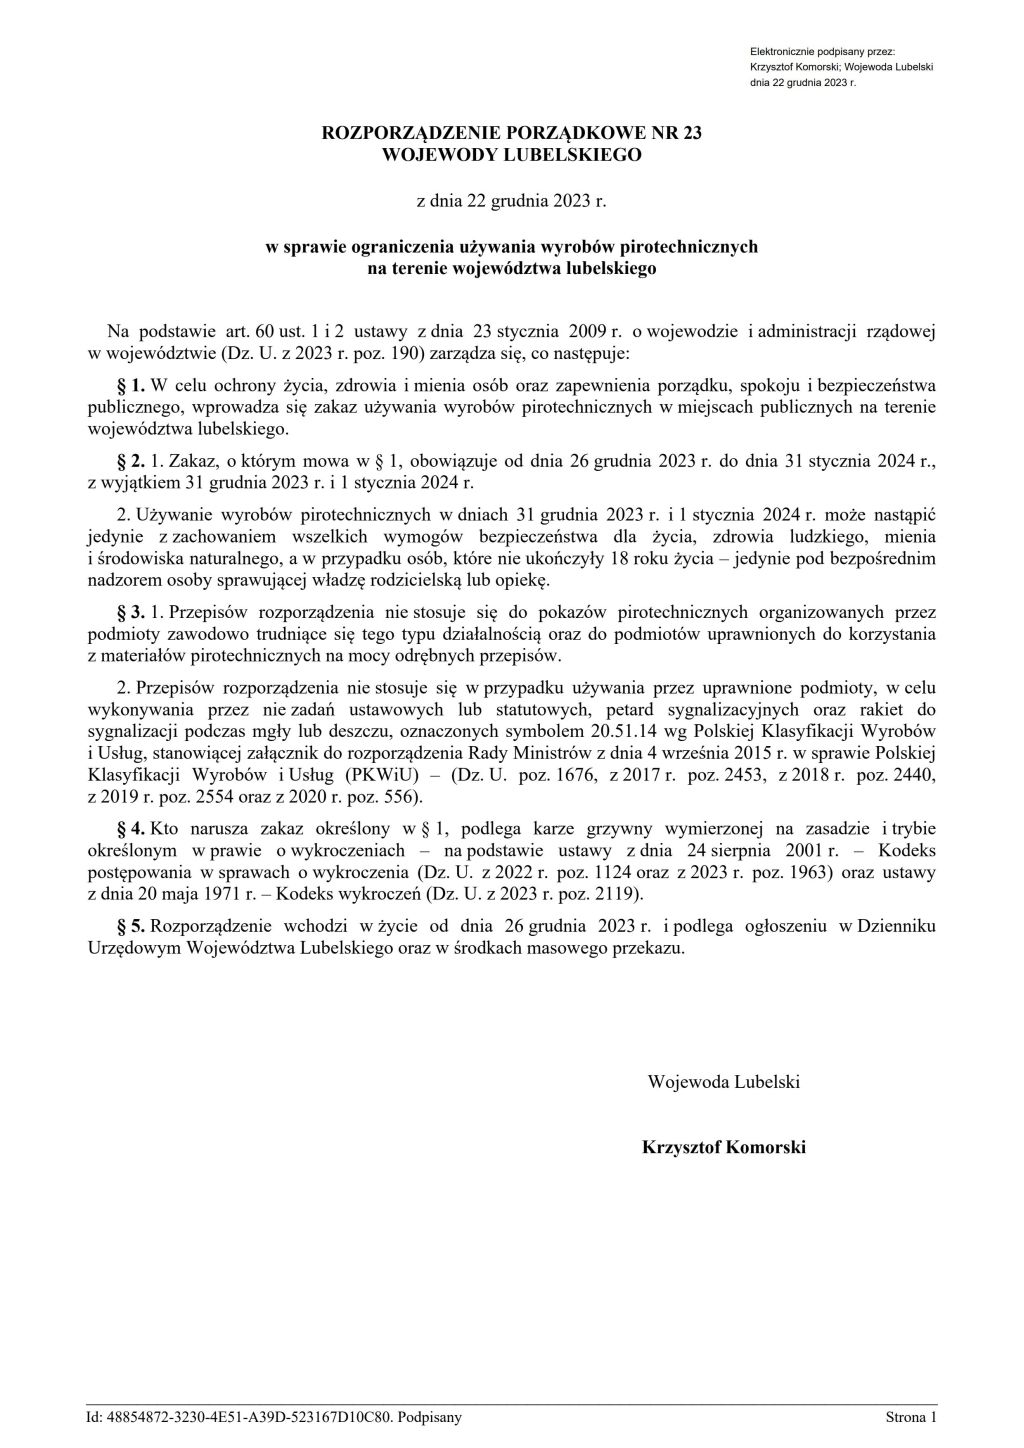 Rozporządzenie porządkowe Nr 23 Wojewody Lubelskiego z dnia 22 grudnia 2023 r. w sprawie ograniczenia używania wyrobów pirotechnicznych na terenie województwa lubelskiego